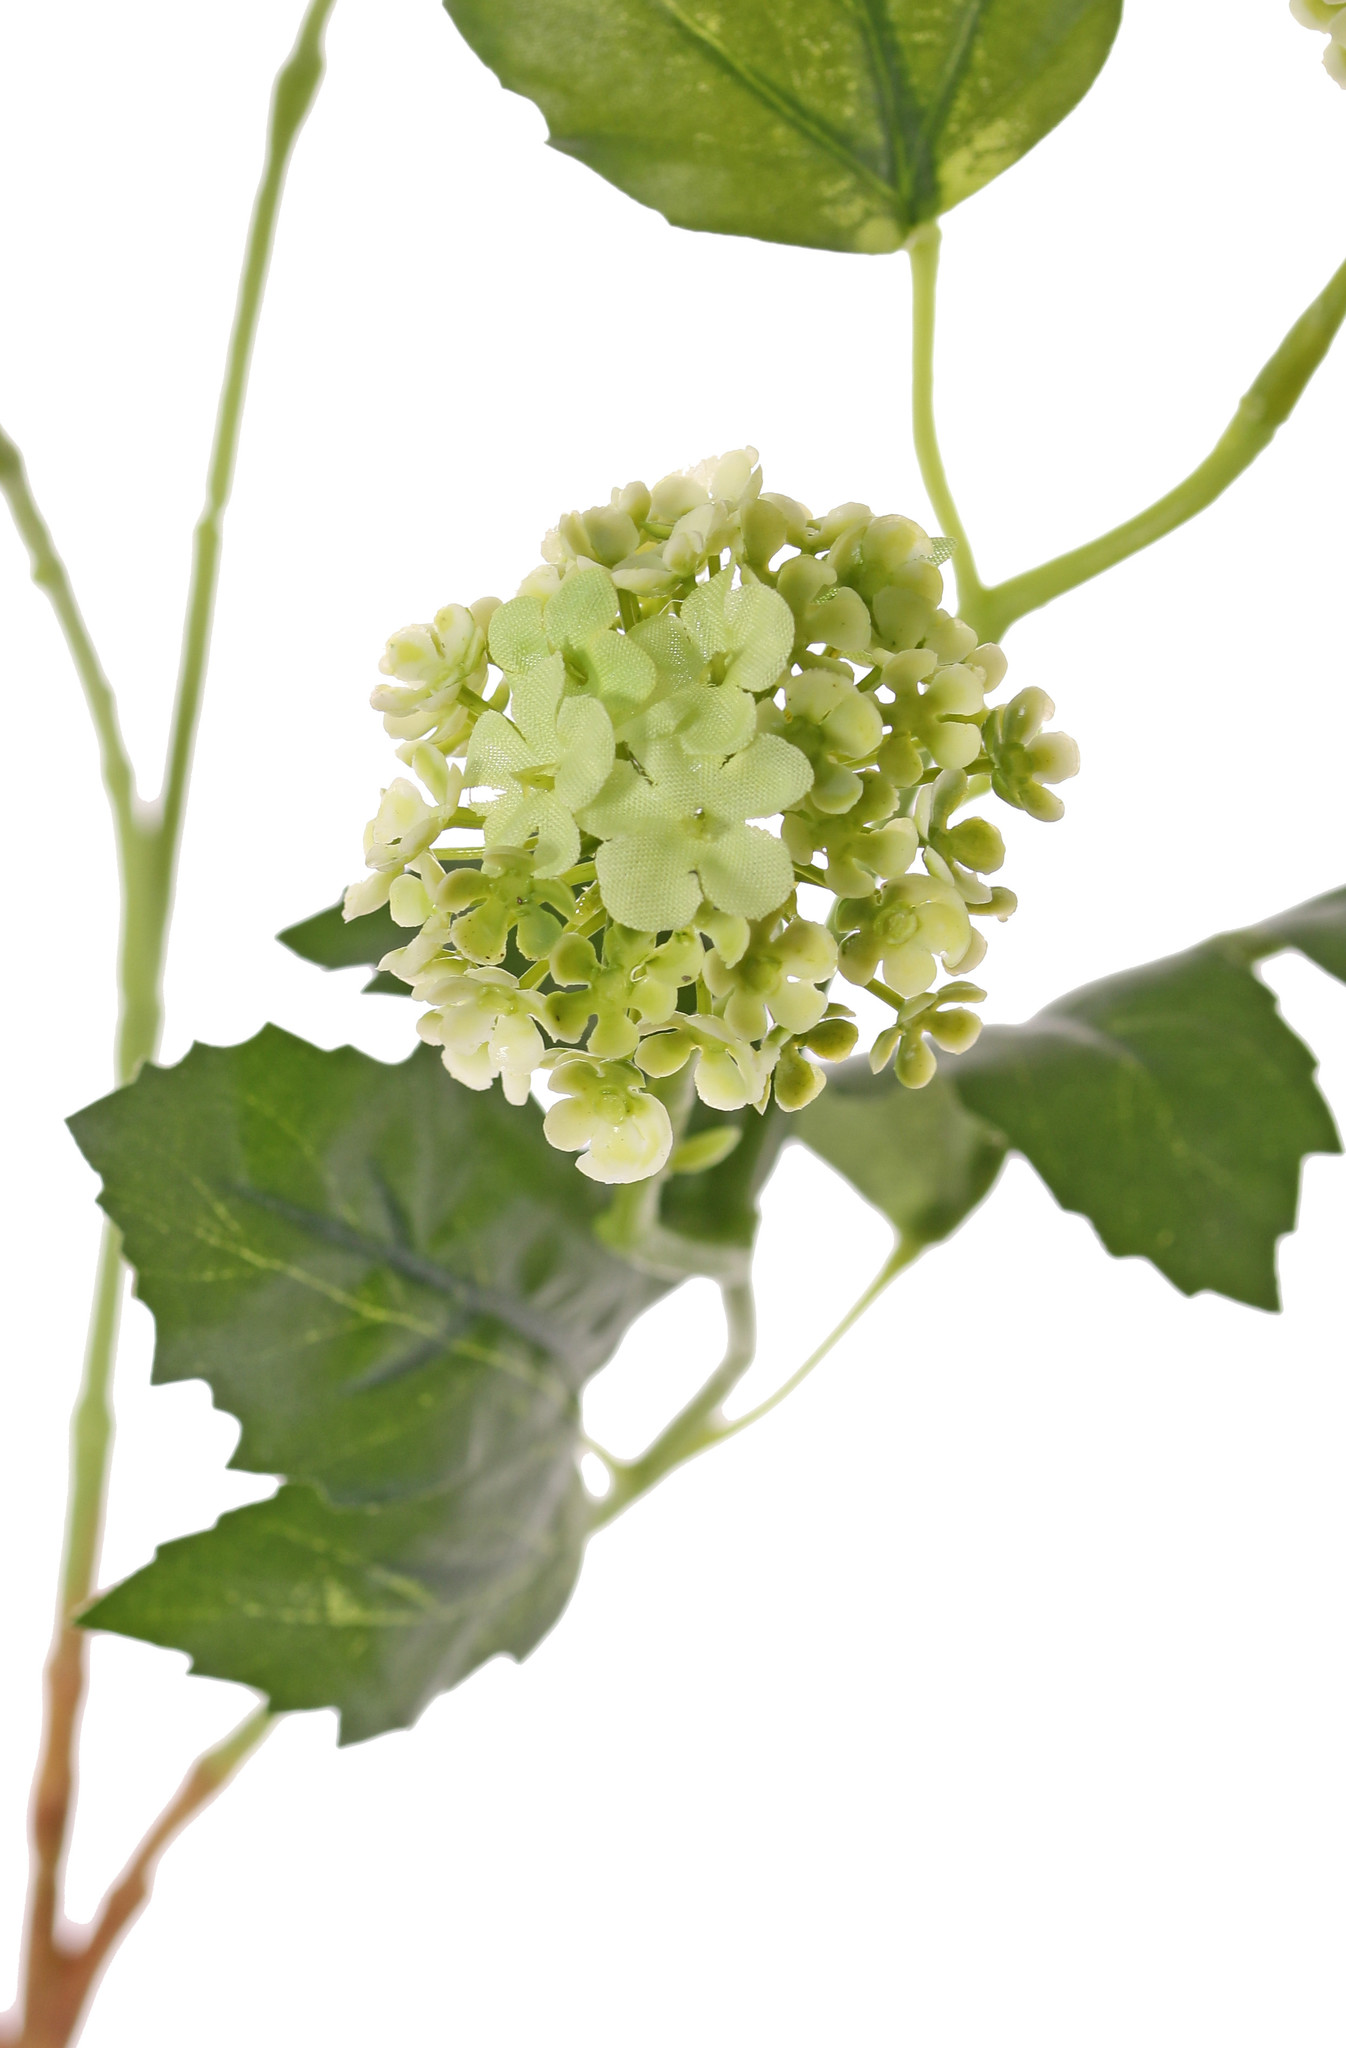 Viburnum (Schneeball) 3 Verzweigungen, 5 Blüten, 7 Blätter, 90 cm